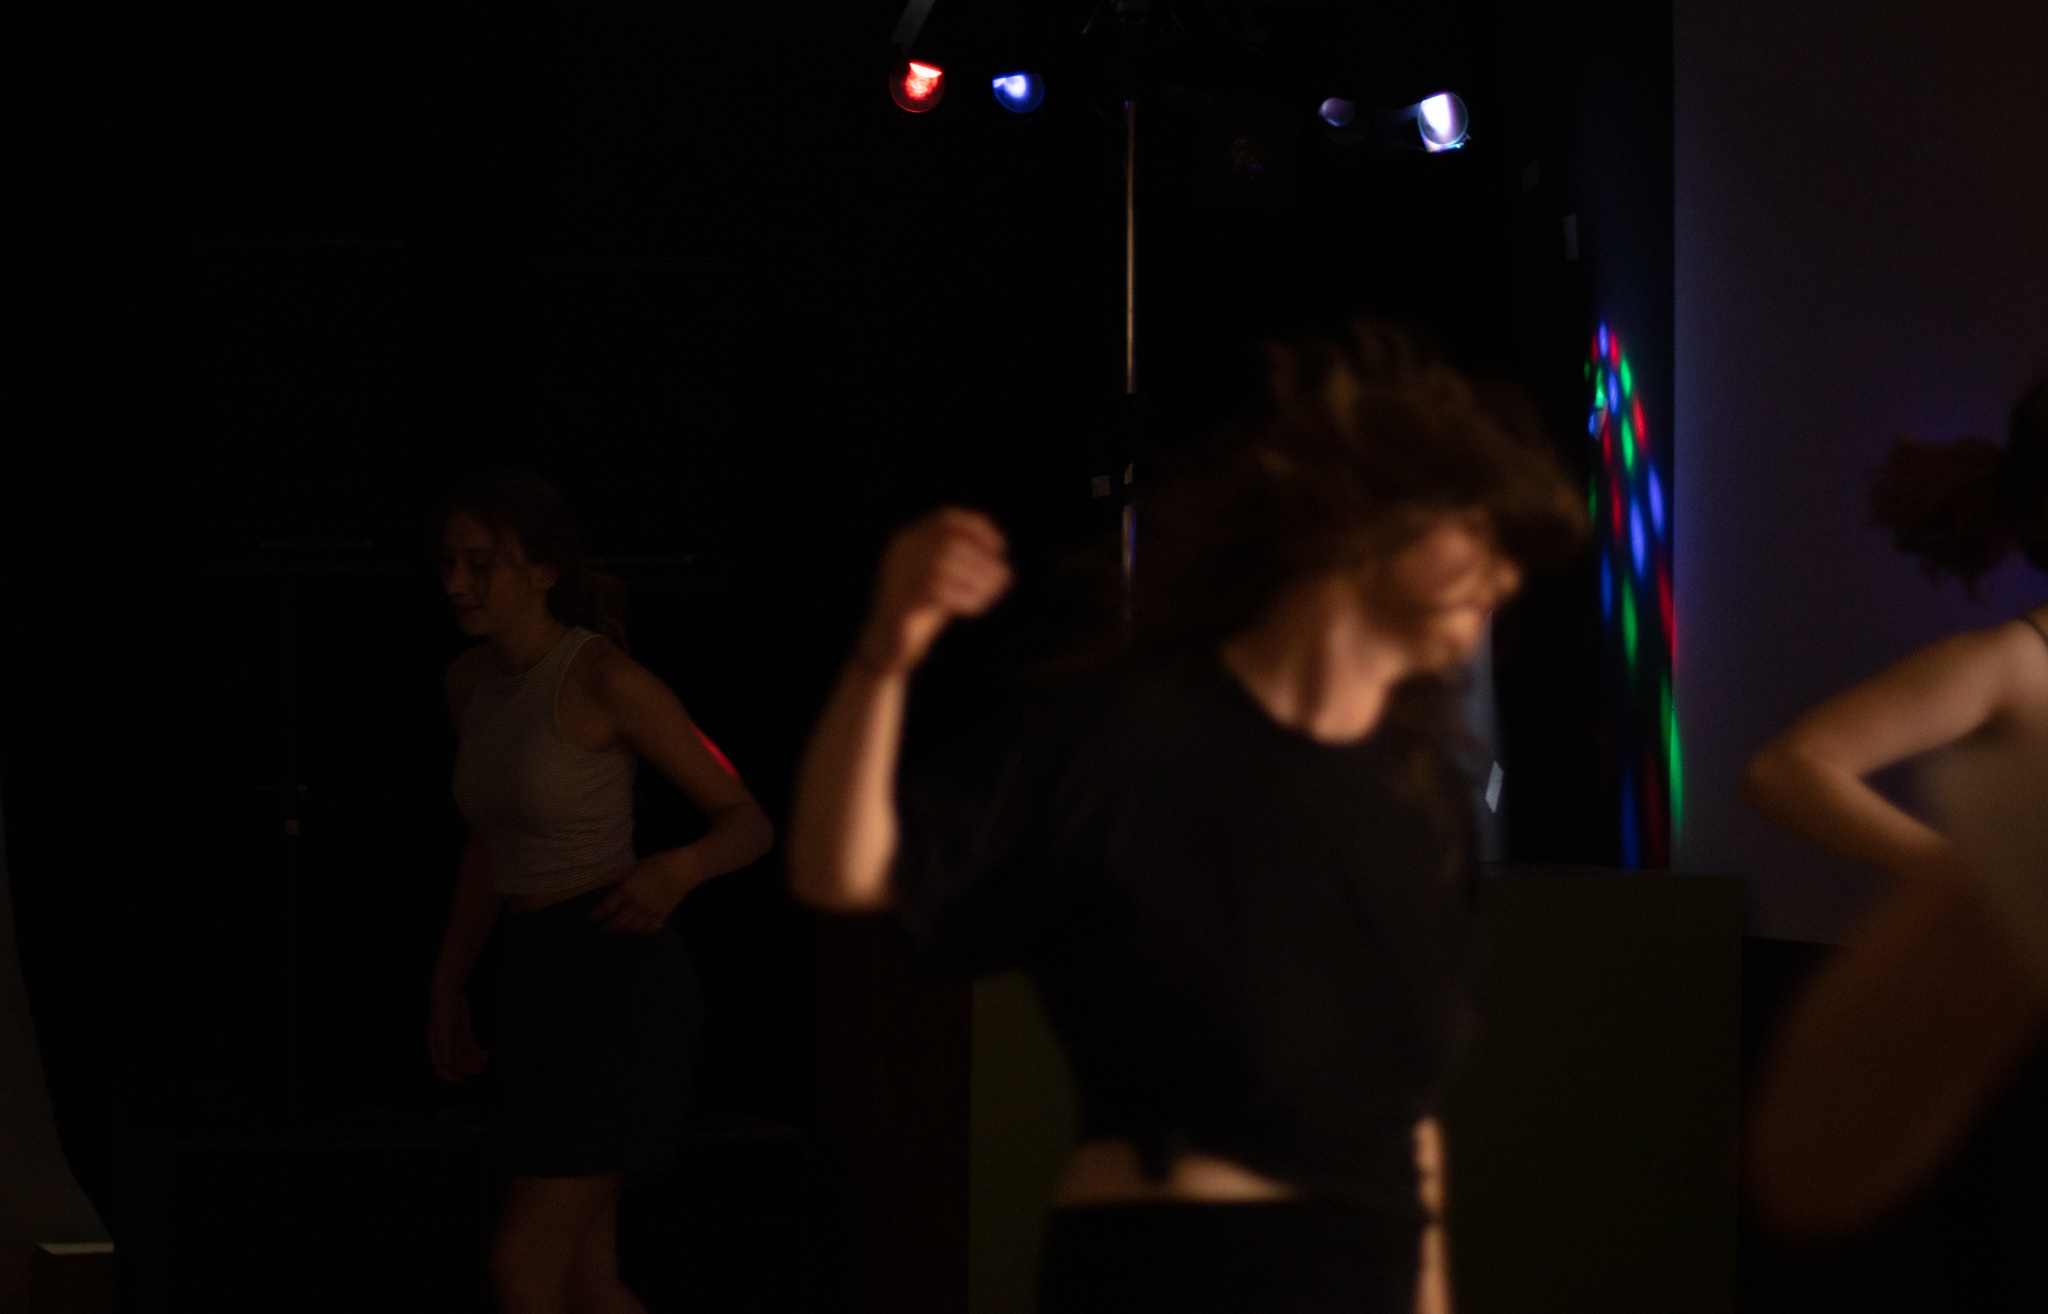 Tanzende Personen in einem dunklen Raum mit bunter Beleuchtung.